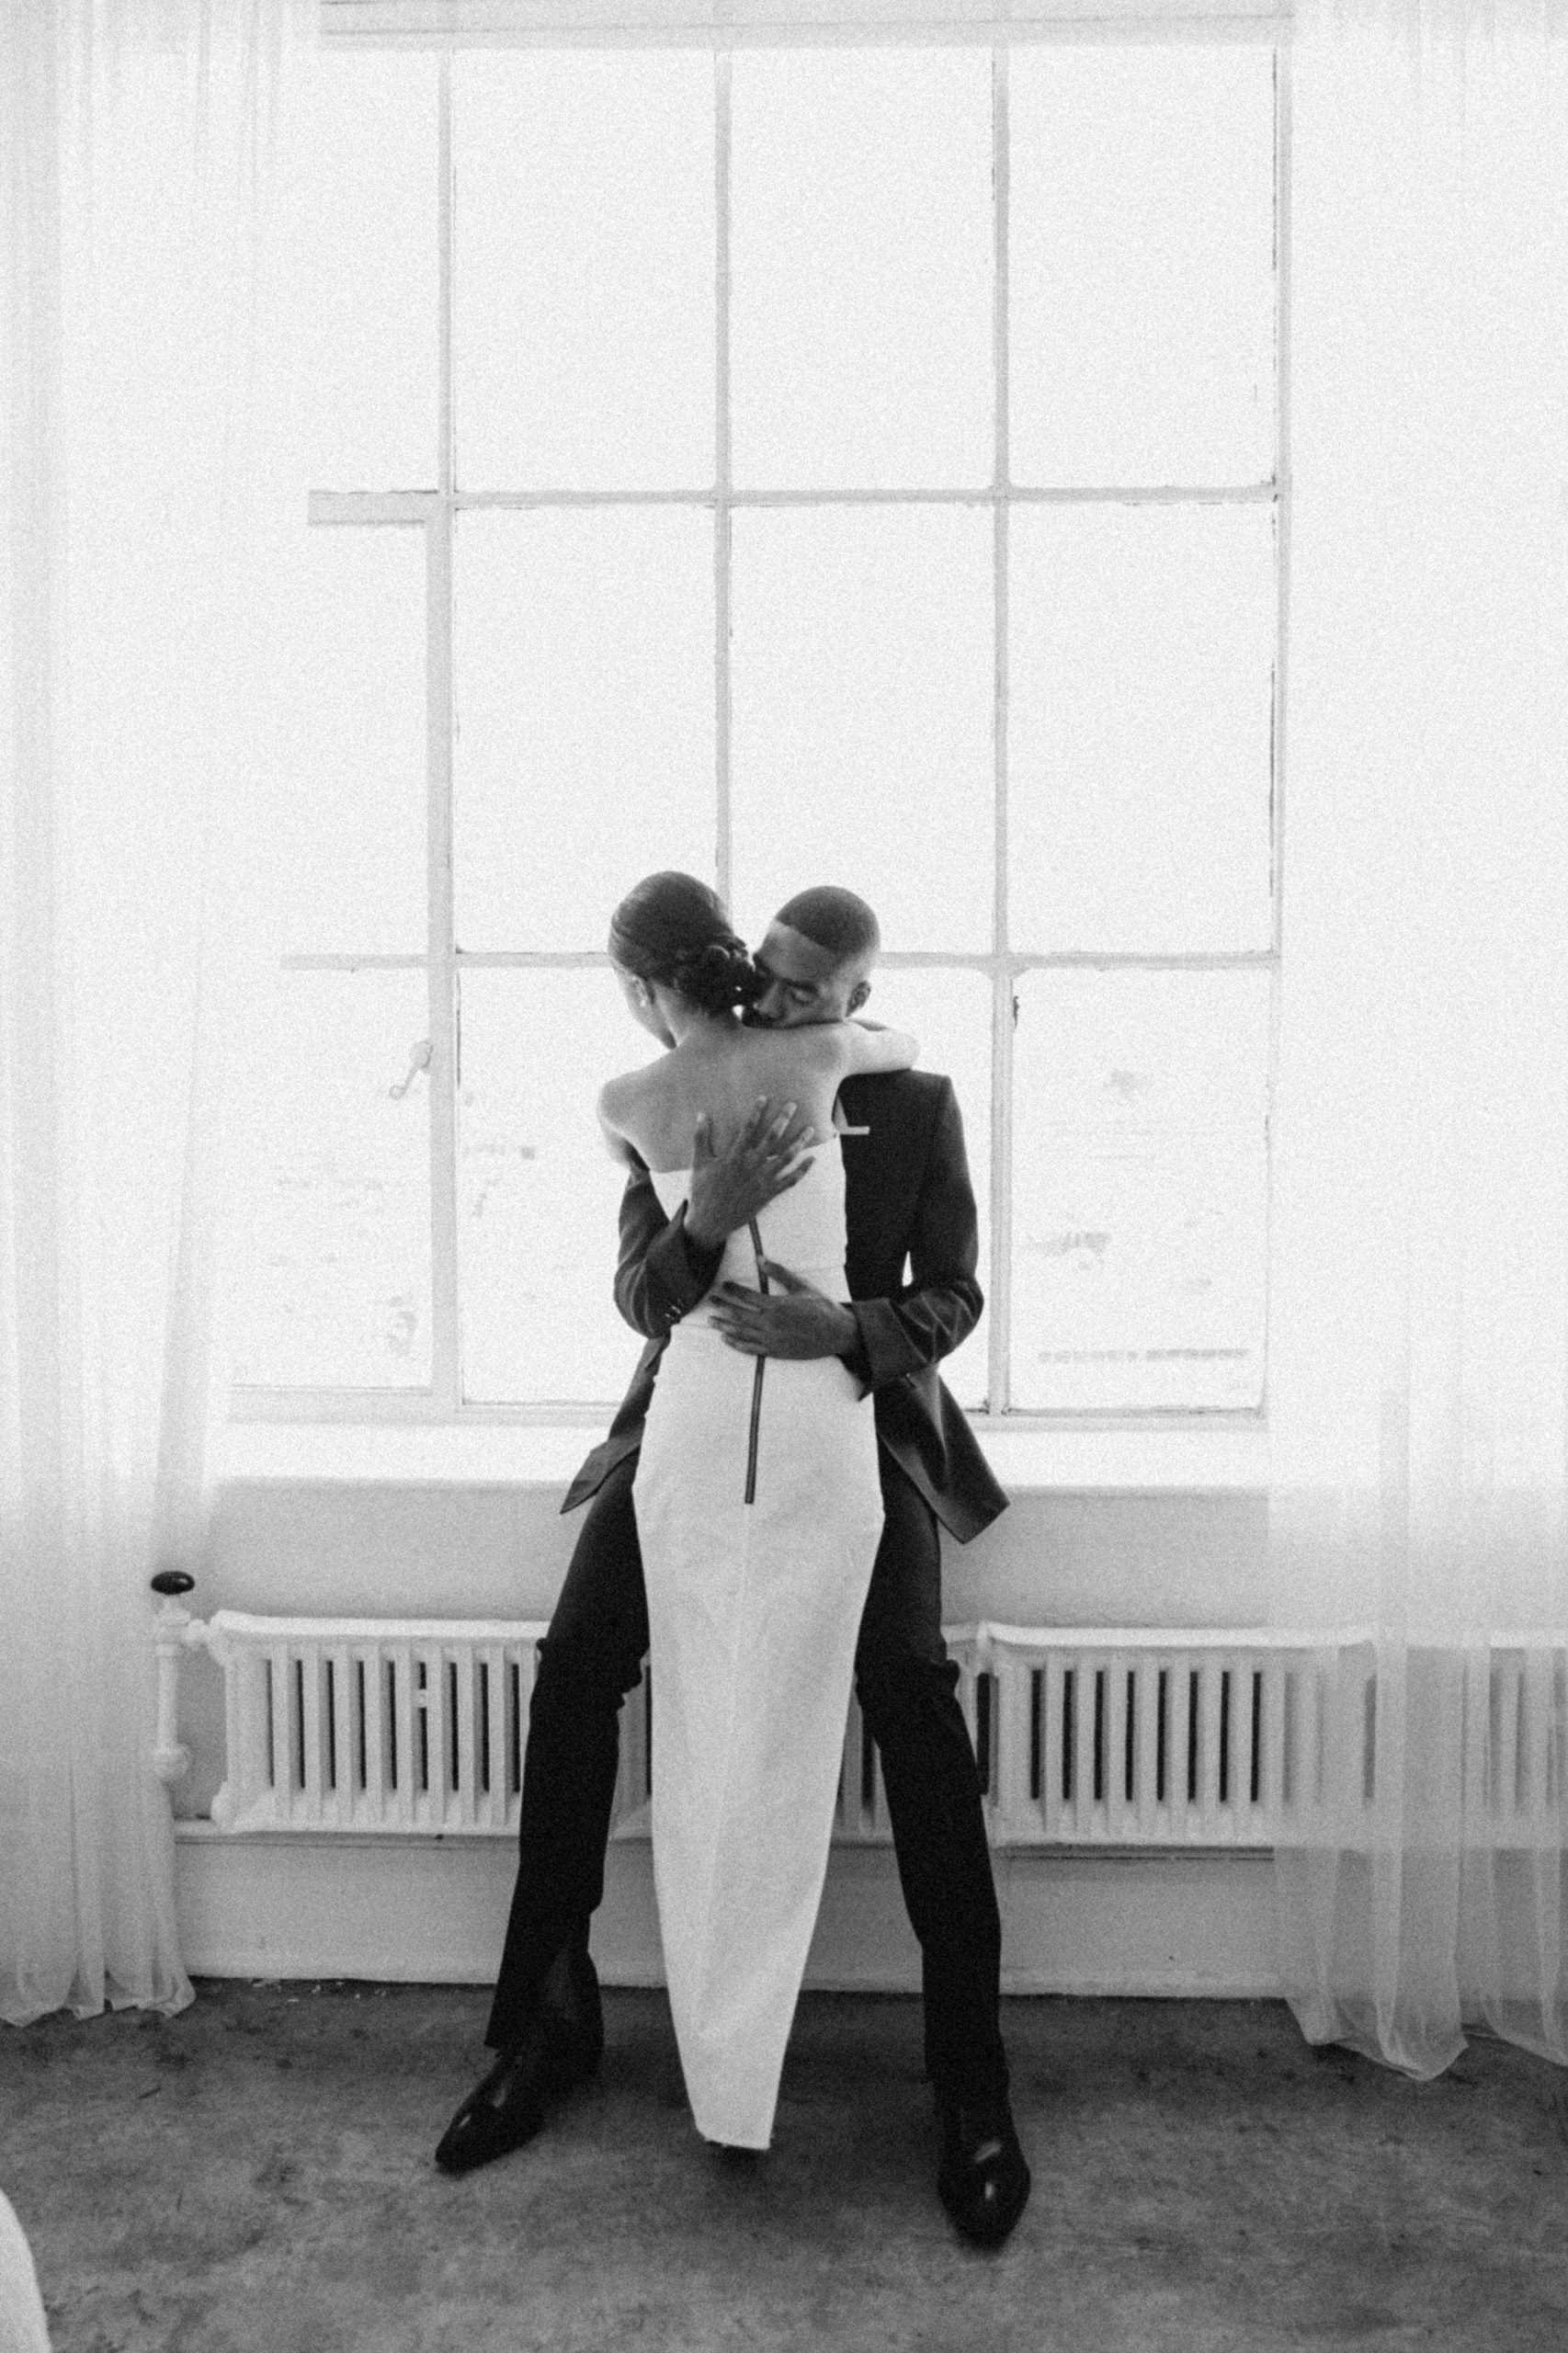 Bridal Bliss: Fashion Couple Chloe (Formerly Of Givenchy) And Nate's (Bottega Veneta) Simple But Striking LA Wedding